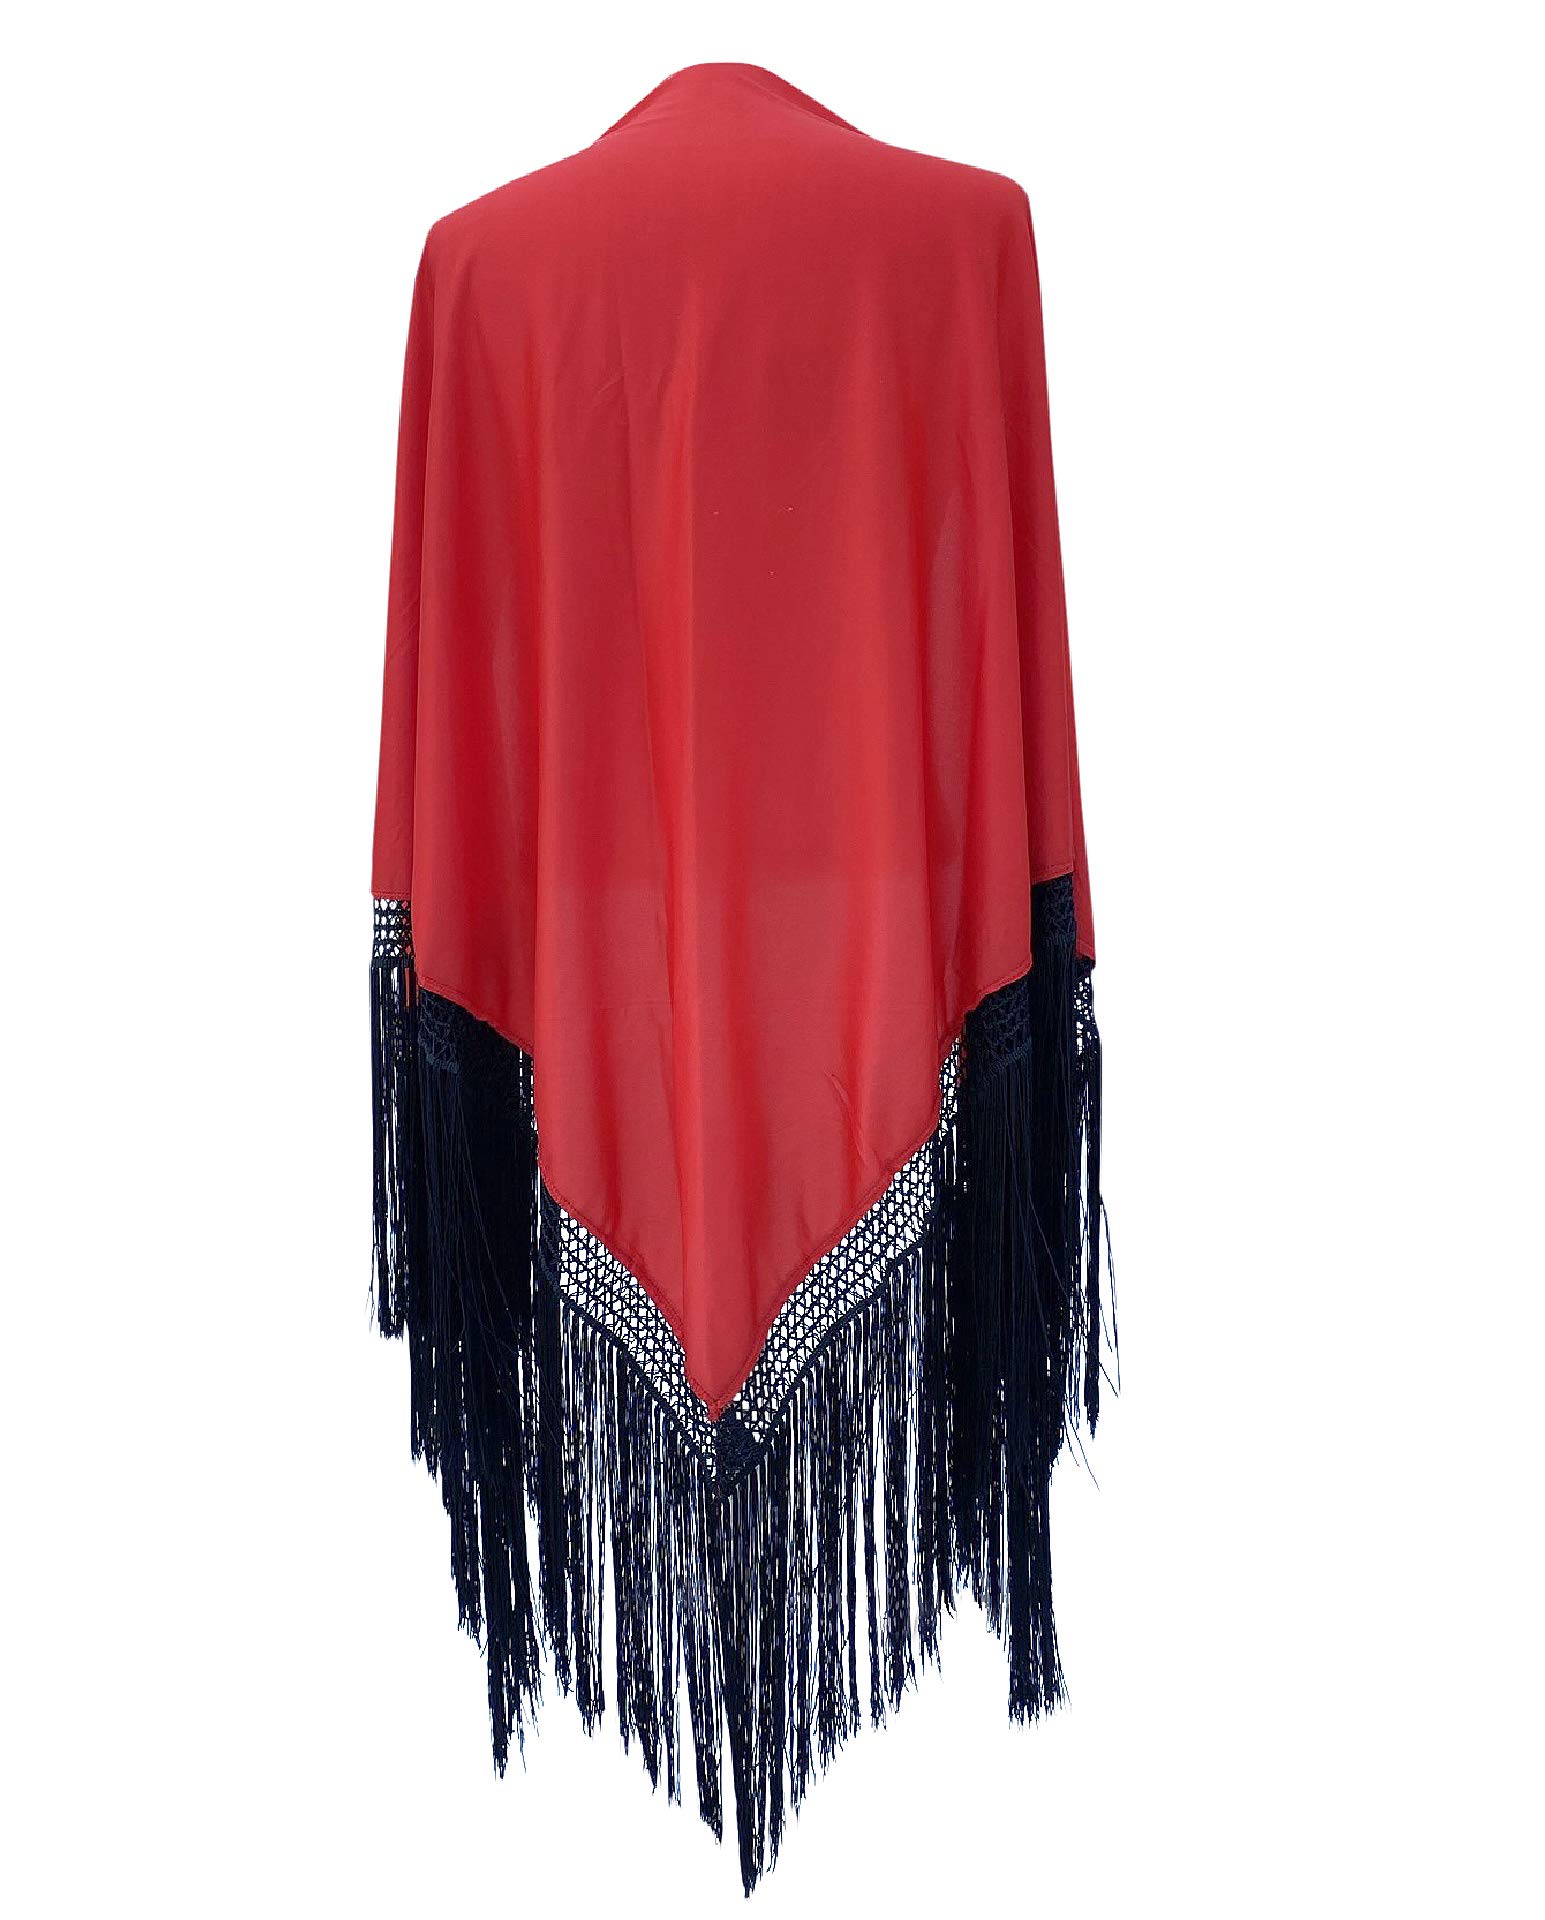 La Senorita Spanischer Manton Tuch Schal rot einfarbig mit schwarzen Fransen Größe: Large 190 * 90 cm für Damen